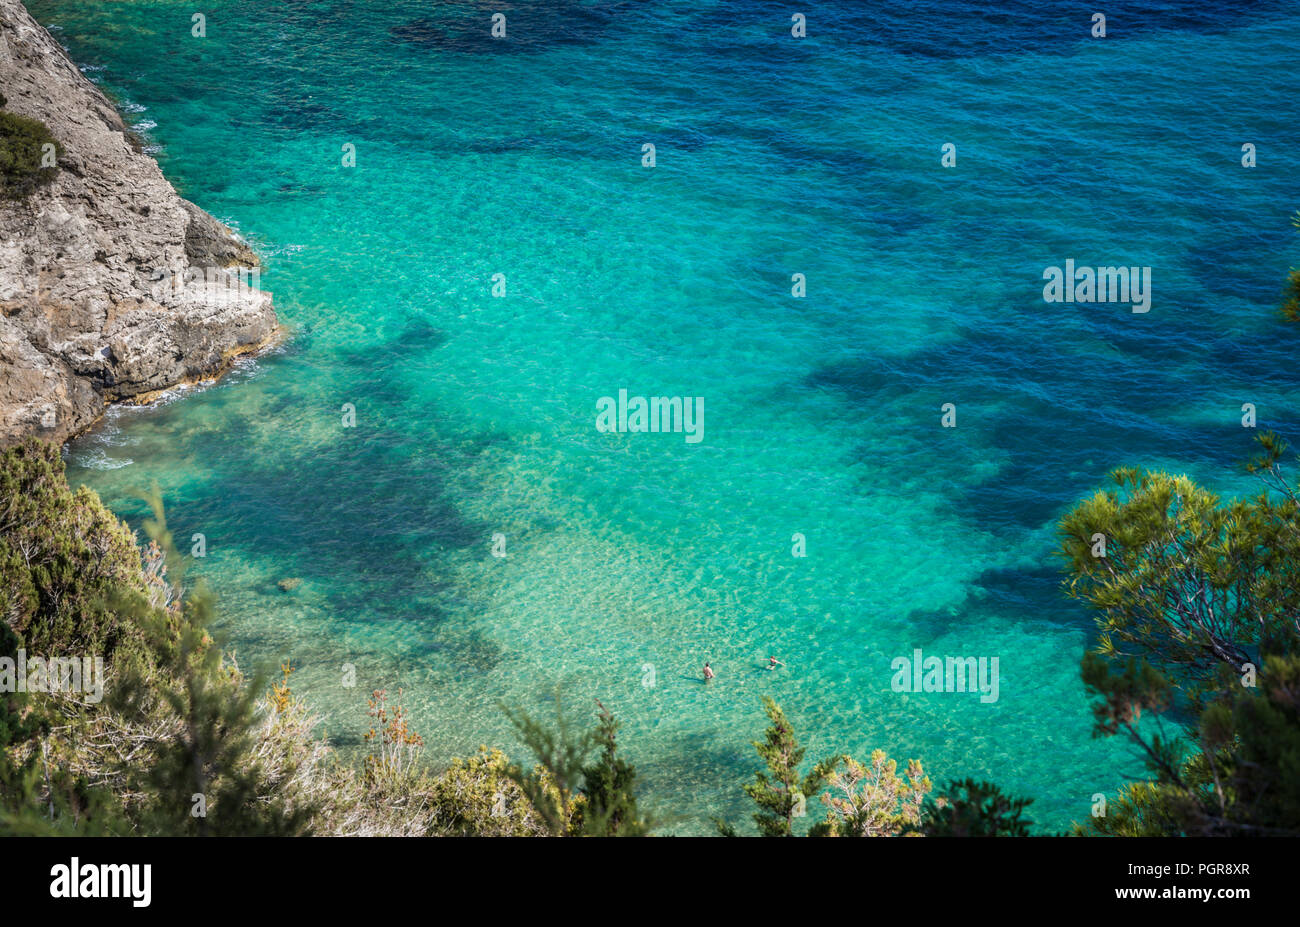 2 personnes piscine dans une belle plage tropicale avec de l'eau turquoise et de sable blanc, l'île d'Ibiza, mer Méditerranée. Banque D'Images